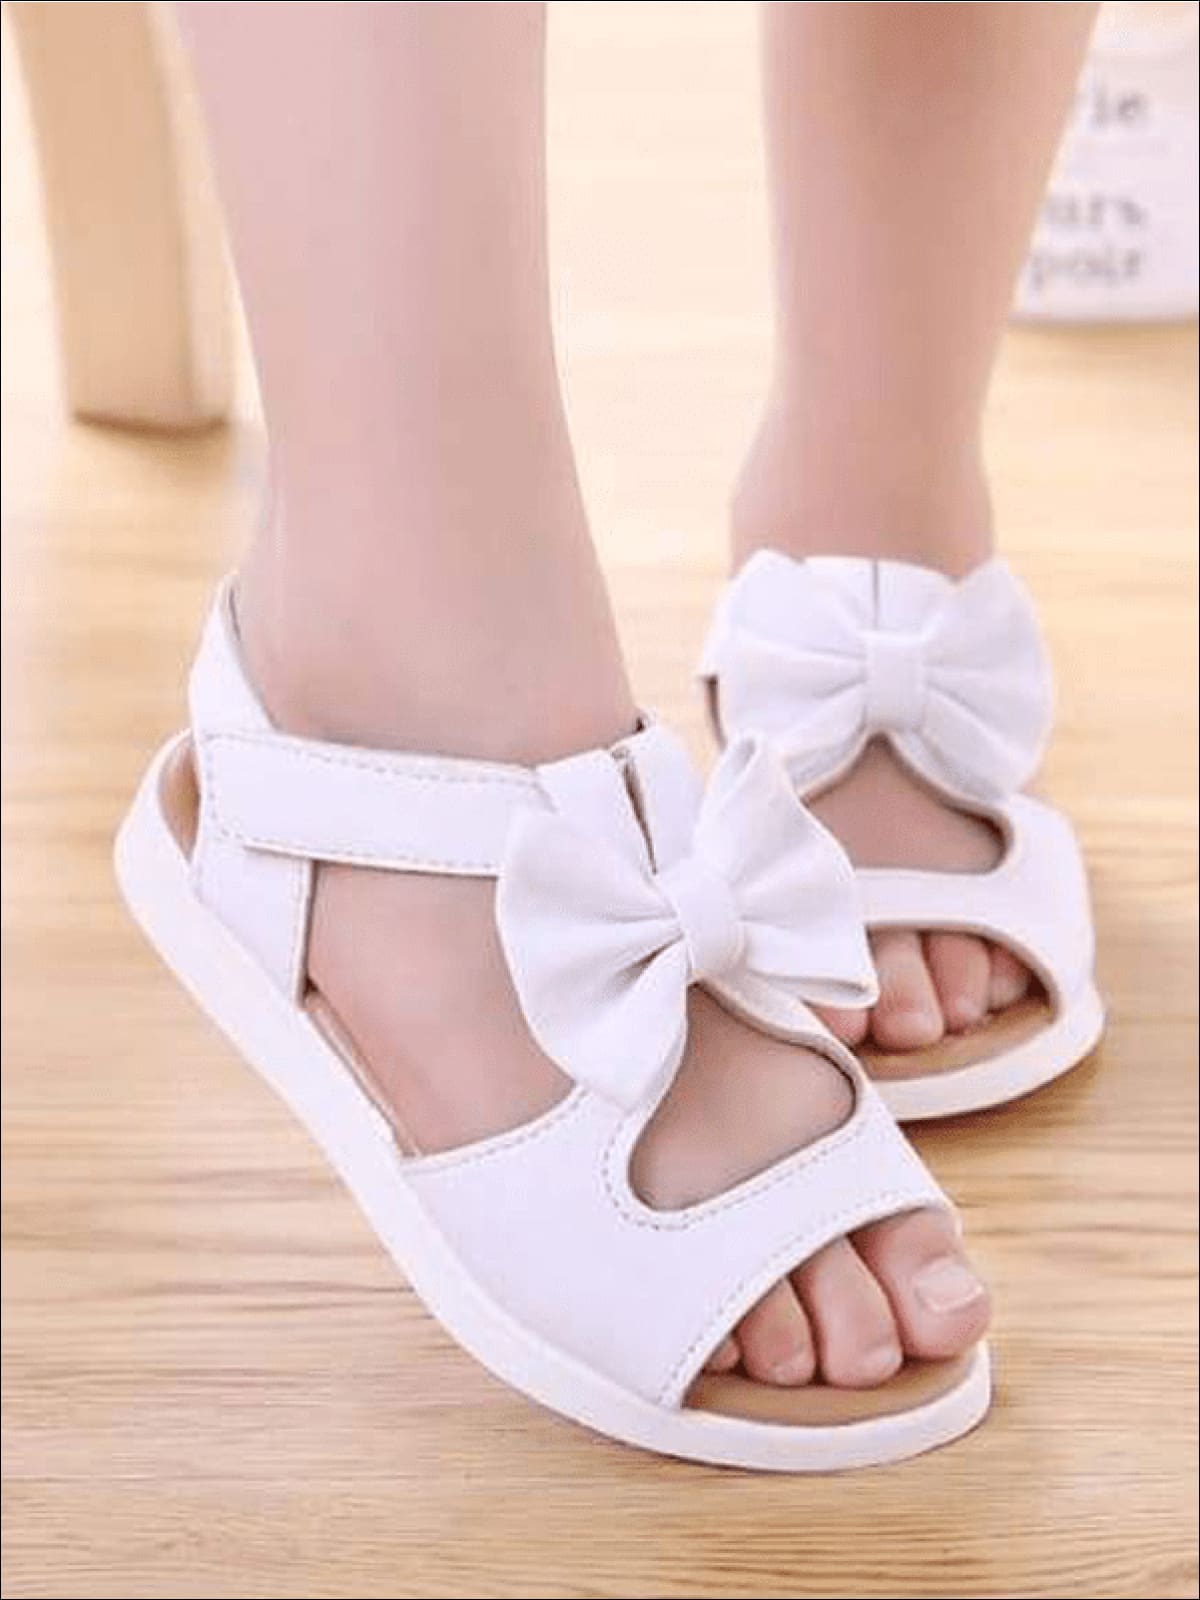 Girls Summer Bow Tie Sandals - White / 1 - Girls Sandals